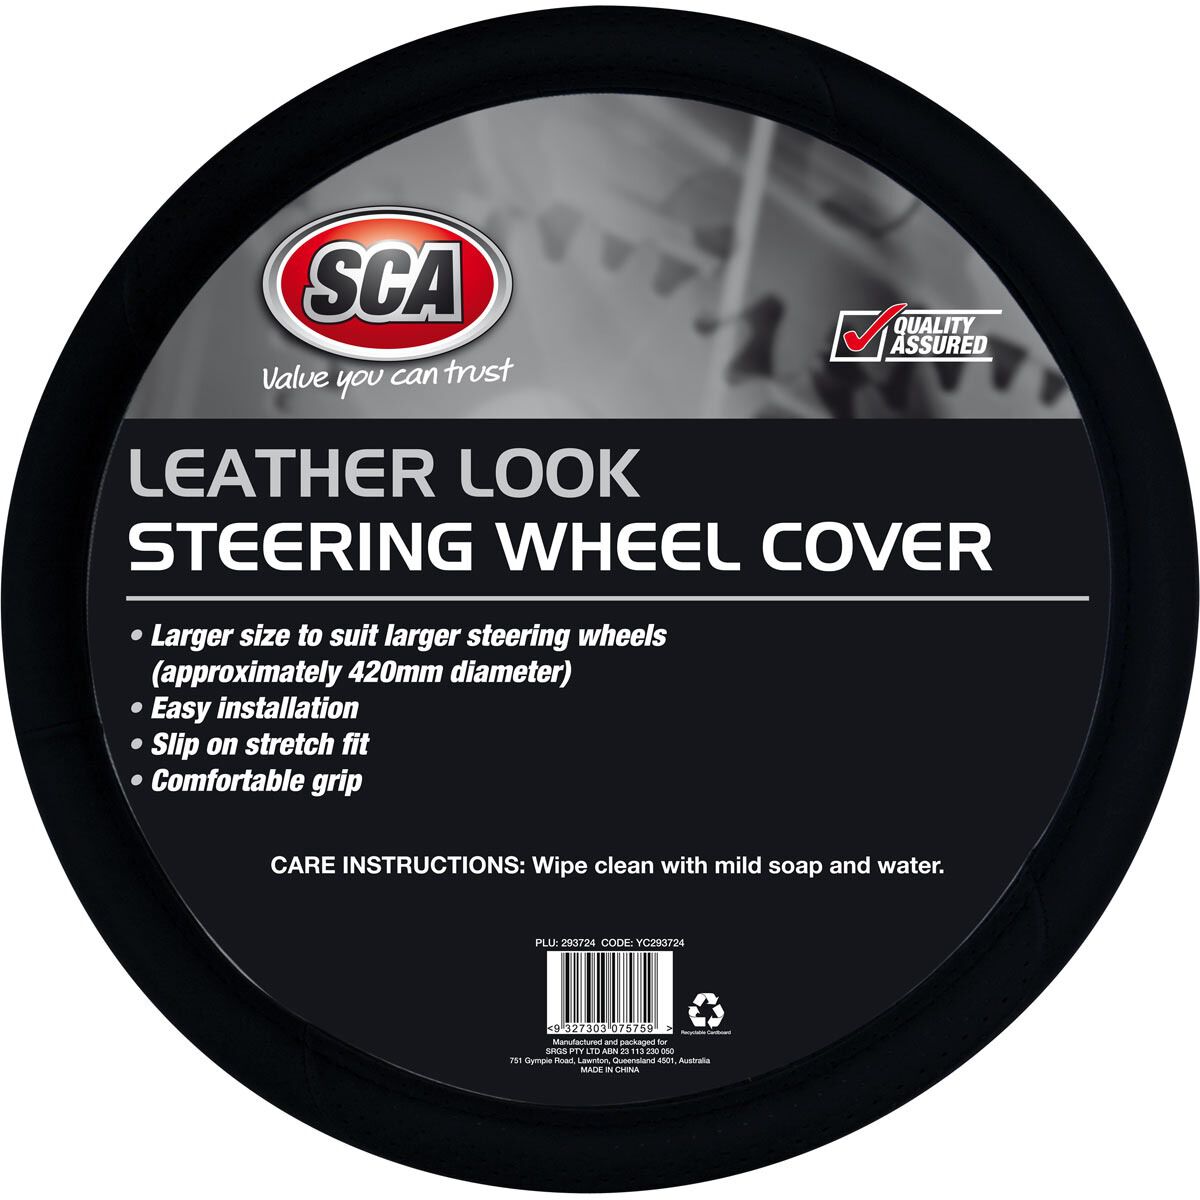 SCA Steering Wheel Cover - Leather Look, Black, 430mm diameter, , scaau_hi-res